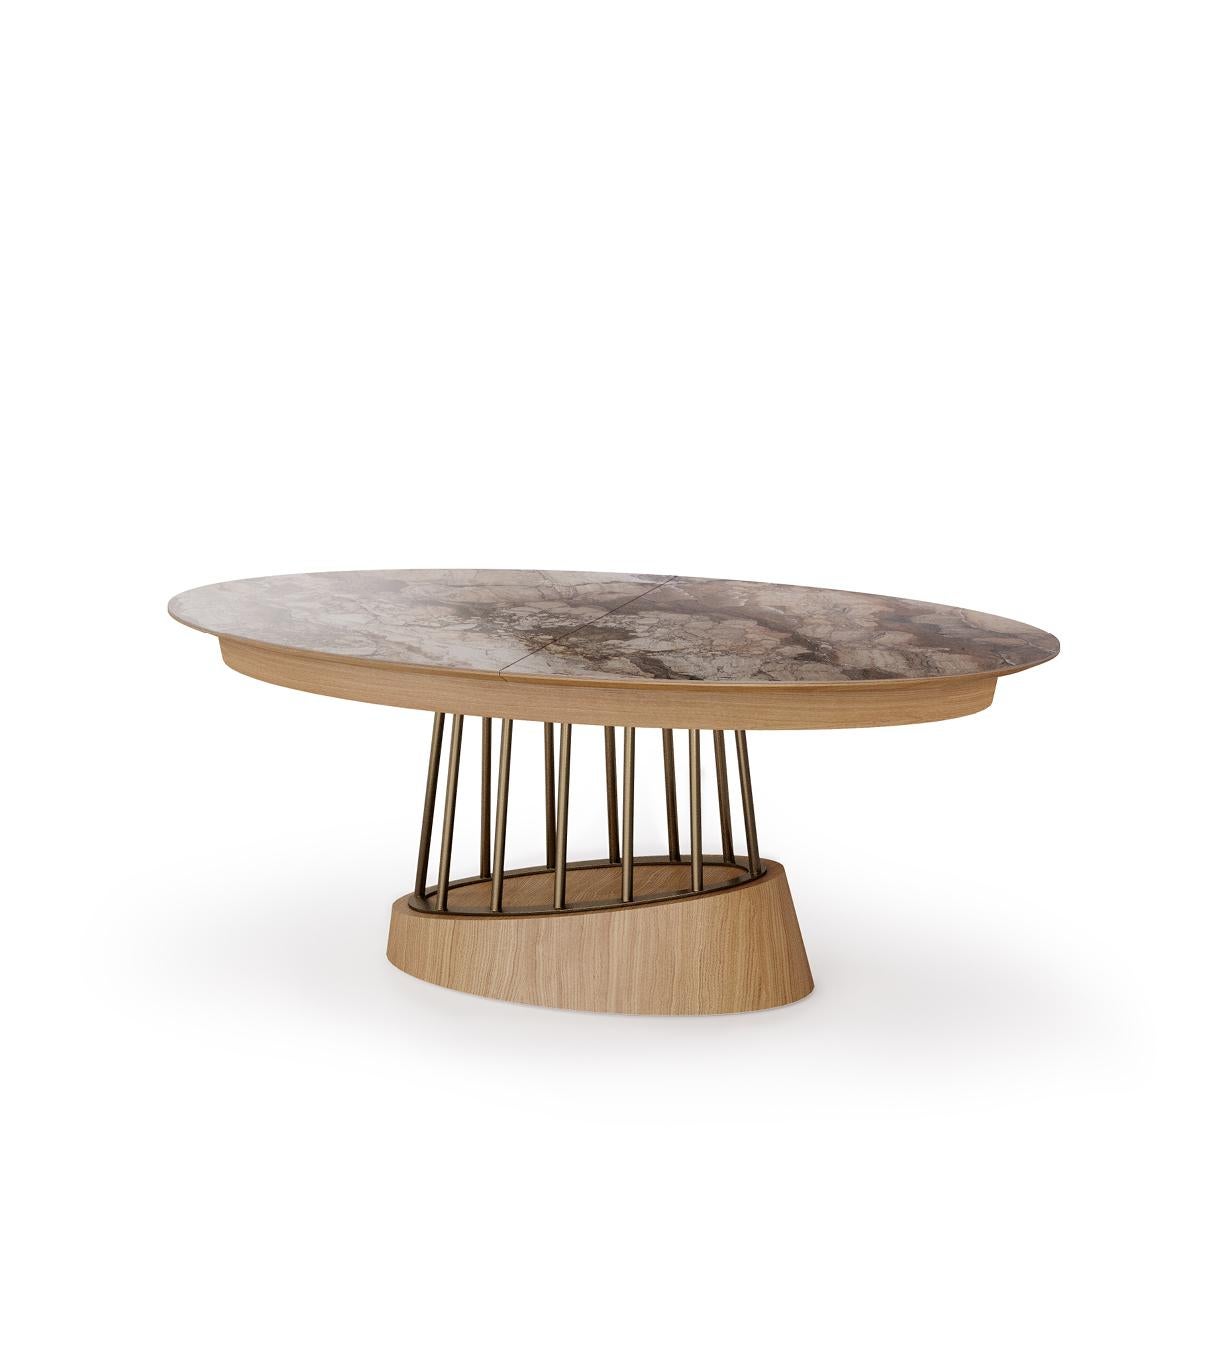 Soleil est une table de salle à manger extravagante à rallonge au design contemporain. Cette table de salle à manger présente une combinaison de bois, d'acier inoxydable et de céramique.